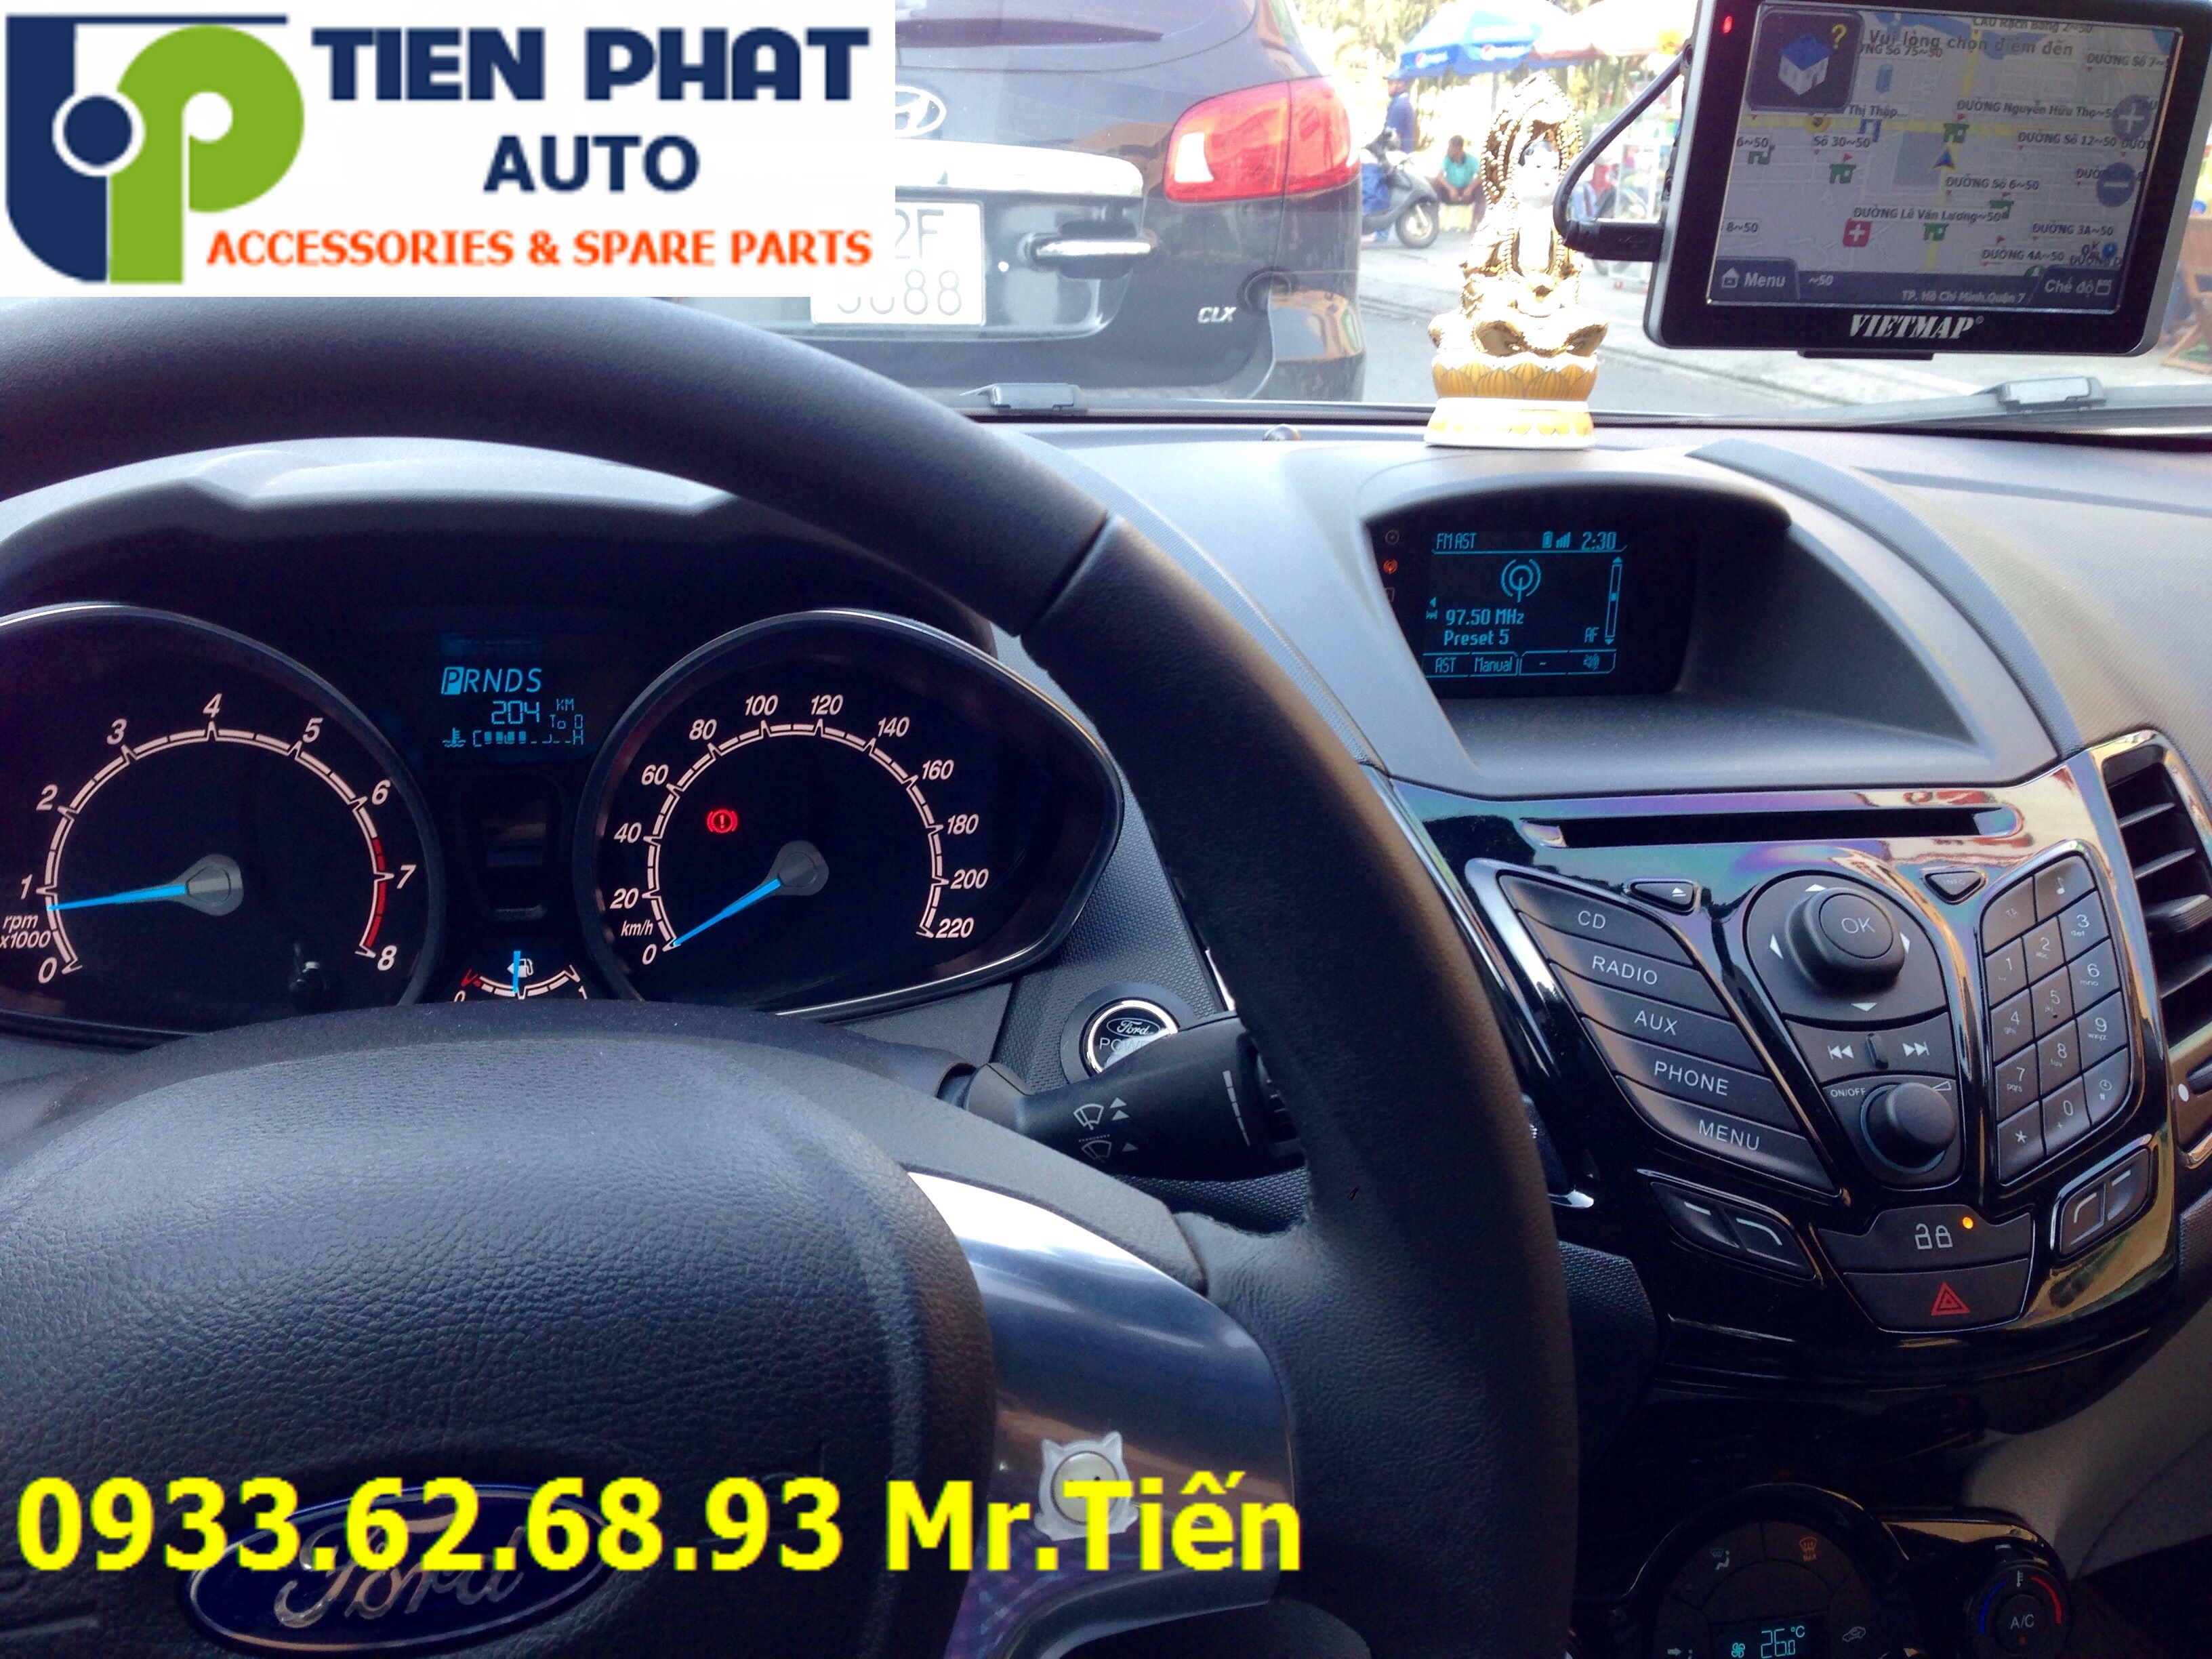 Lắp Thiết Bị Dẫn Đường (GPS) VietMap S1 Cho Xe Ô Tô Tại Quận 1 Uy Tín Nhanh